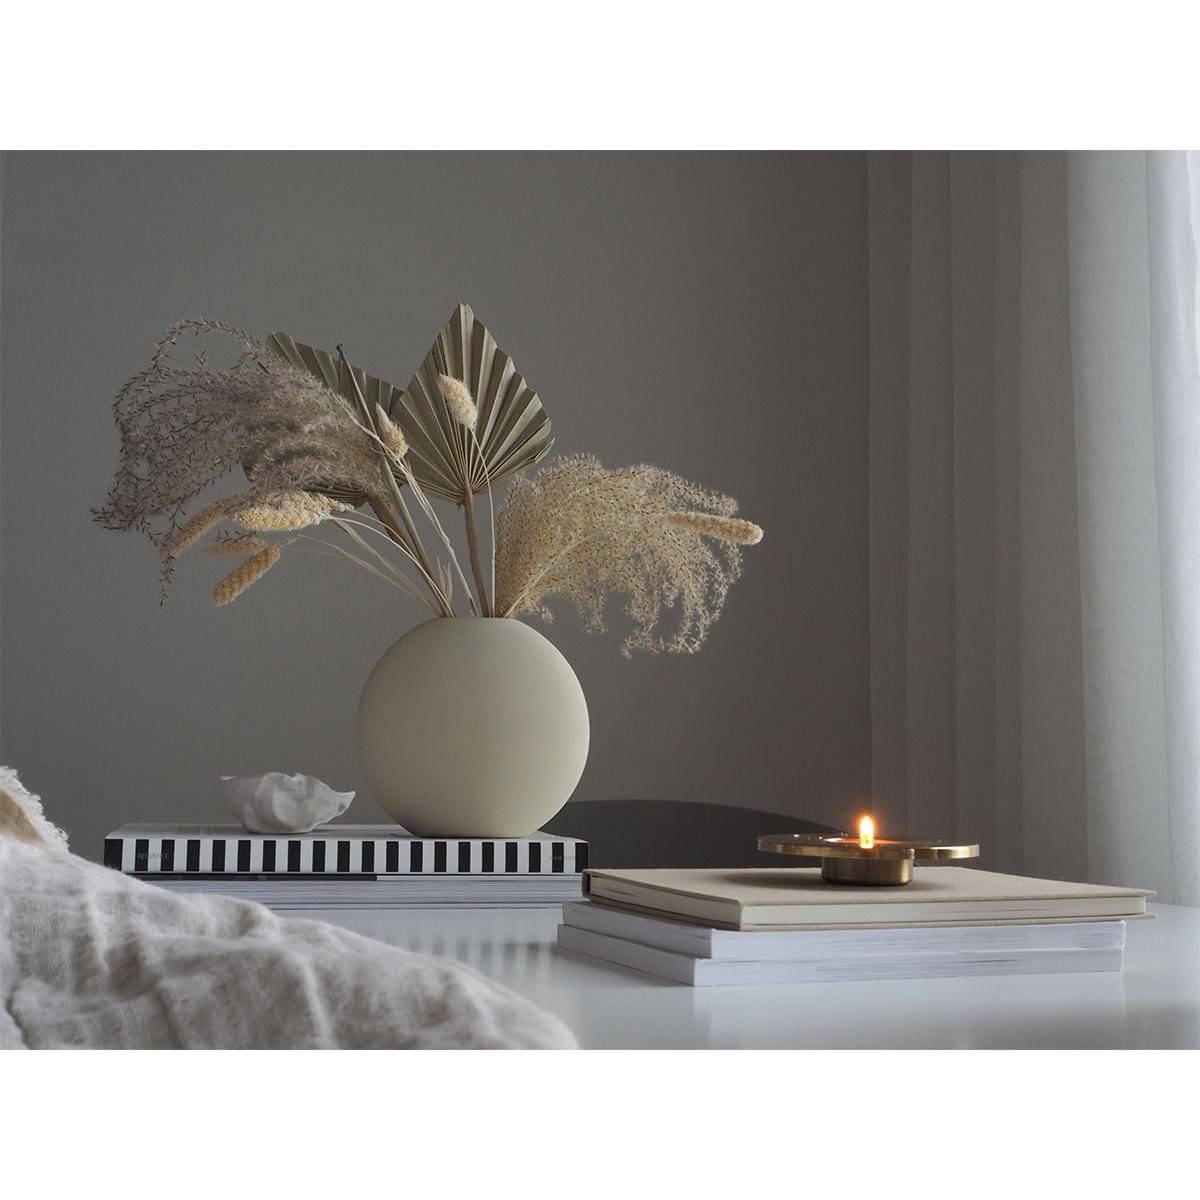 Cooee (15cm) Grau Dekovase Shell Pastille Design Vase